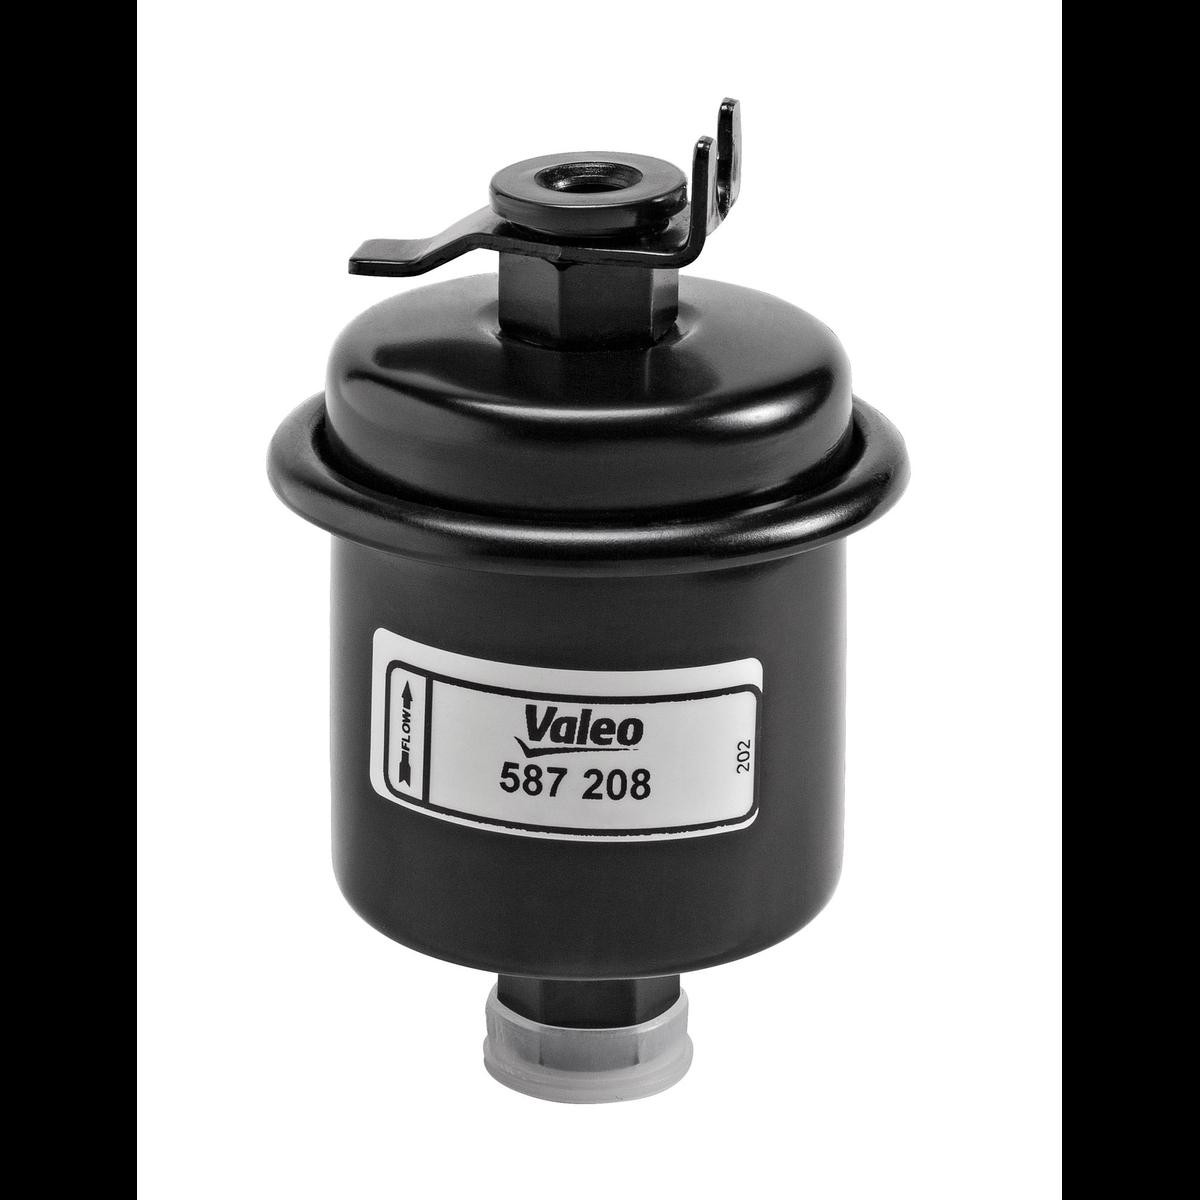 VALEO 587208 Fuel filter 16010-ST5-931